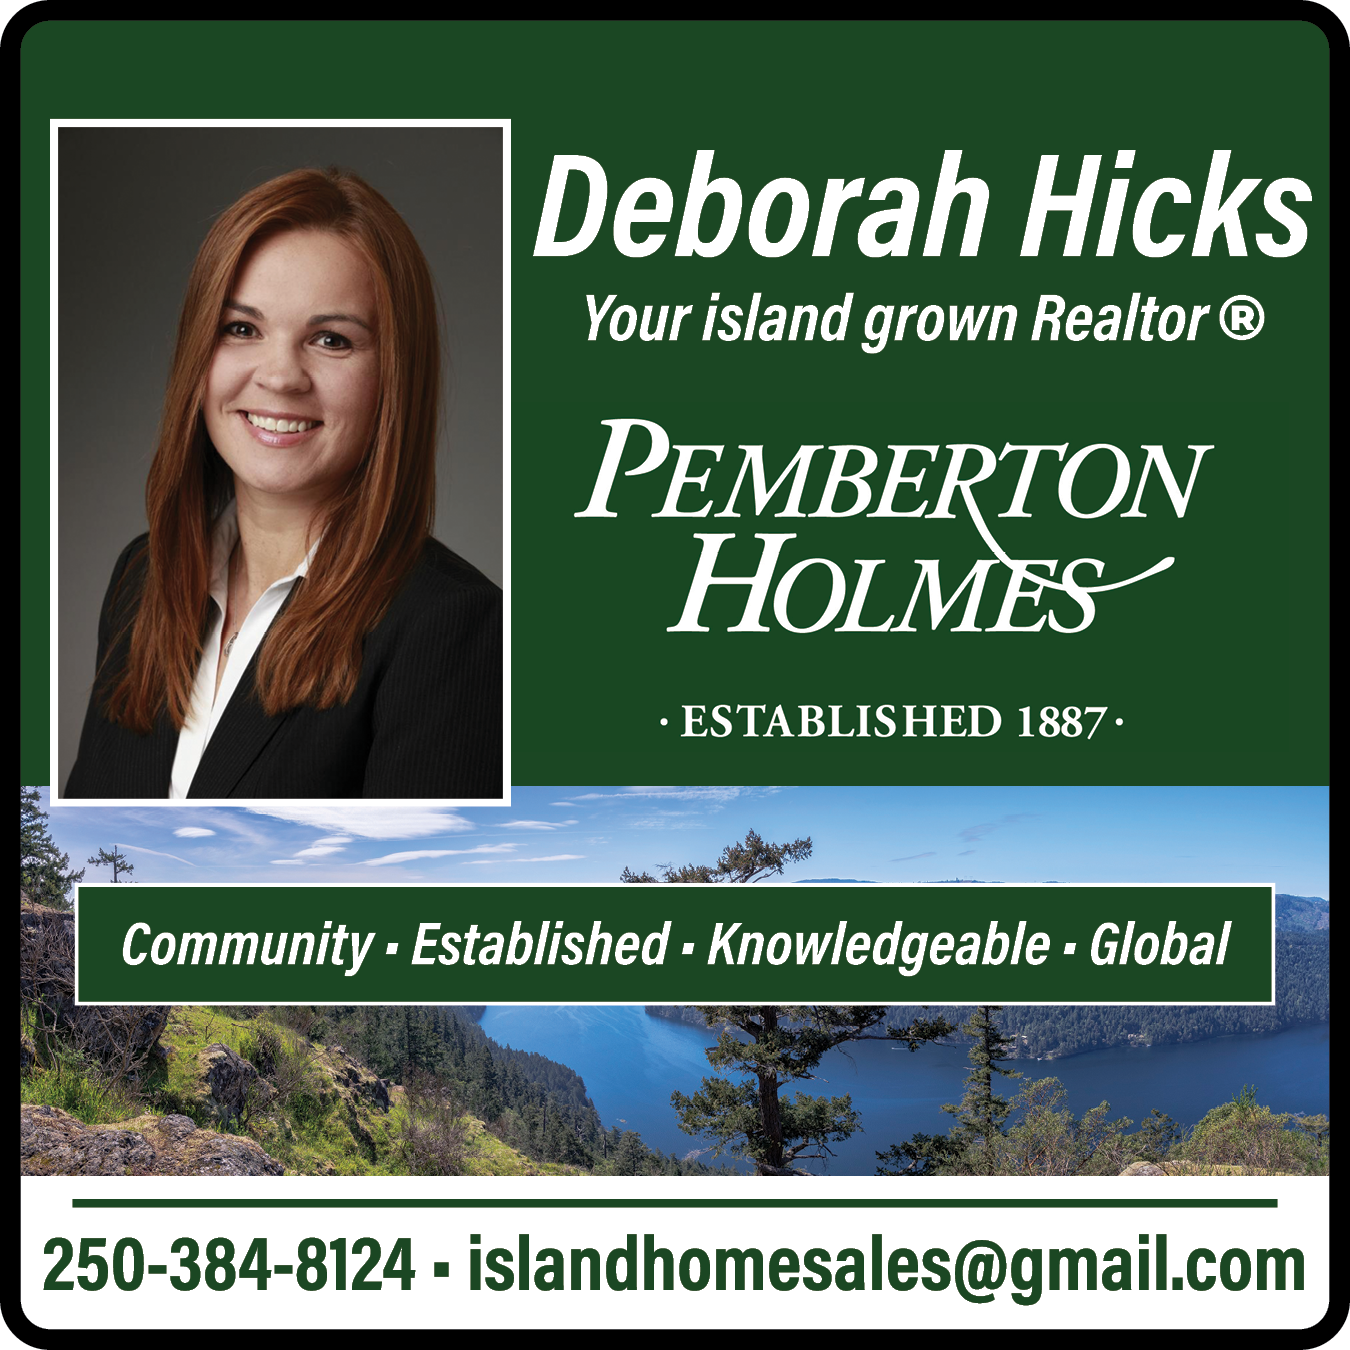 Pemberton Holmes Ltd. - Real Estate